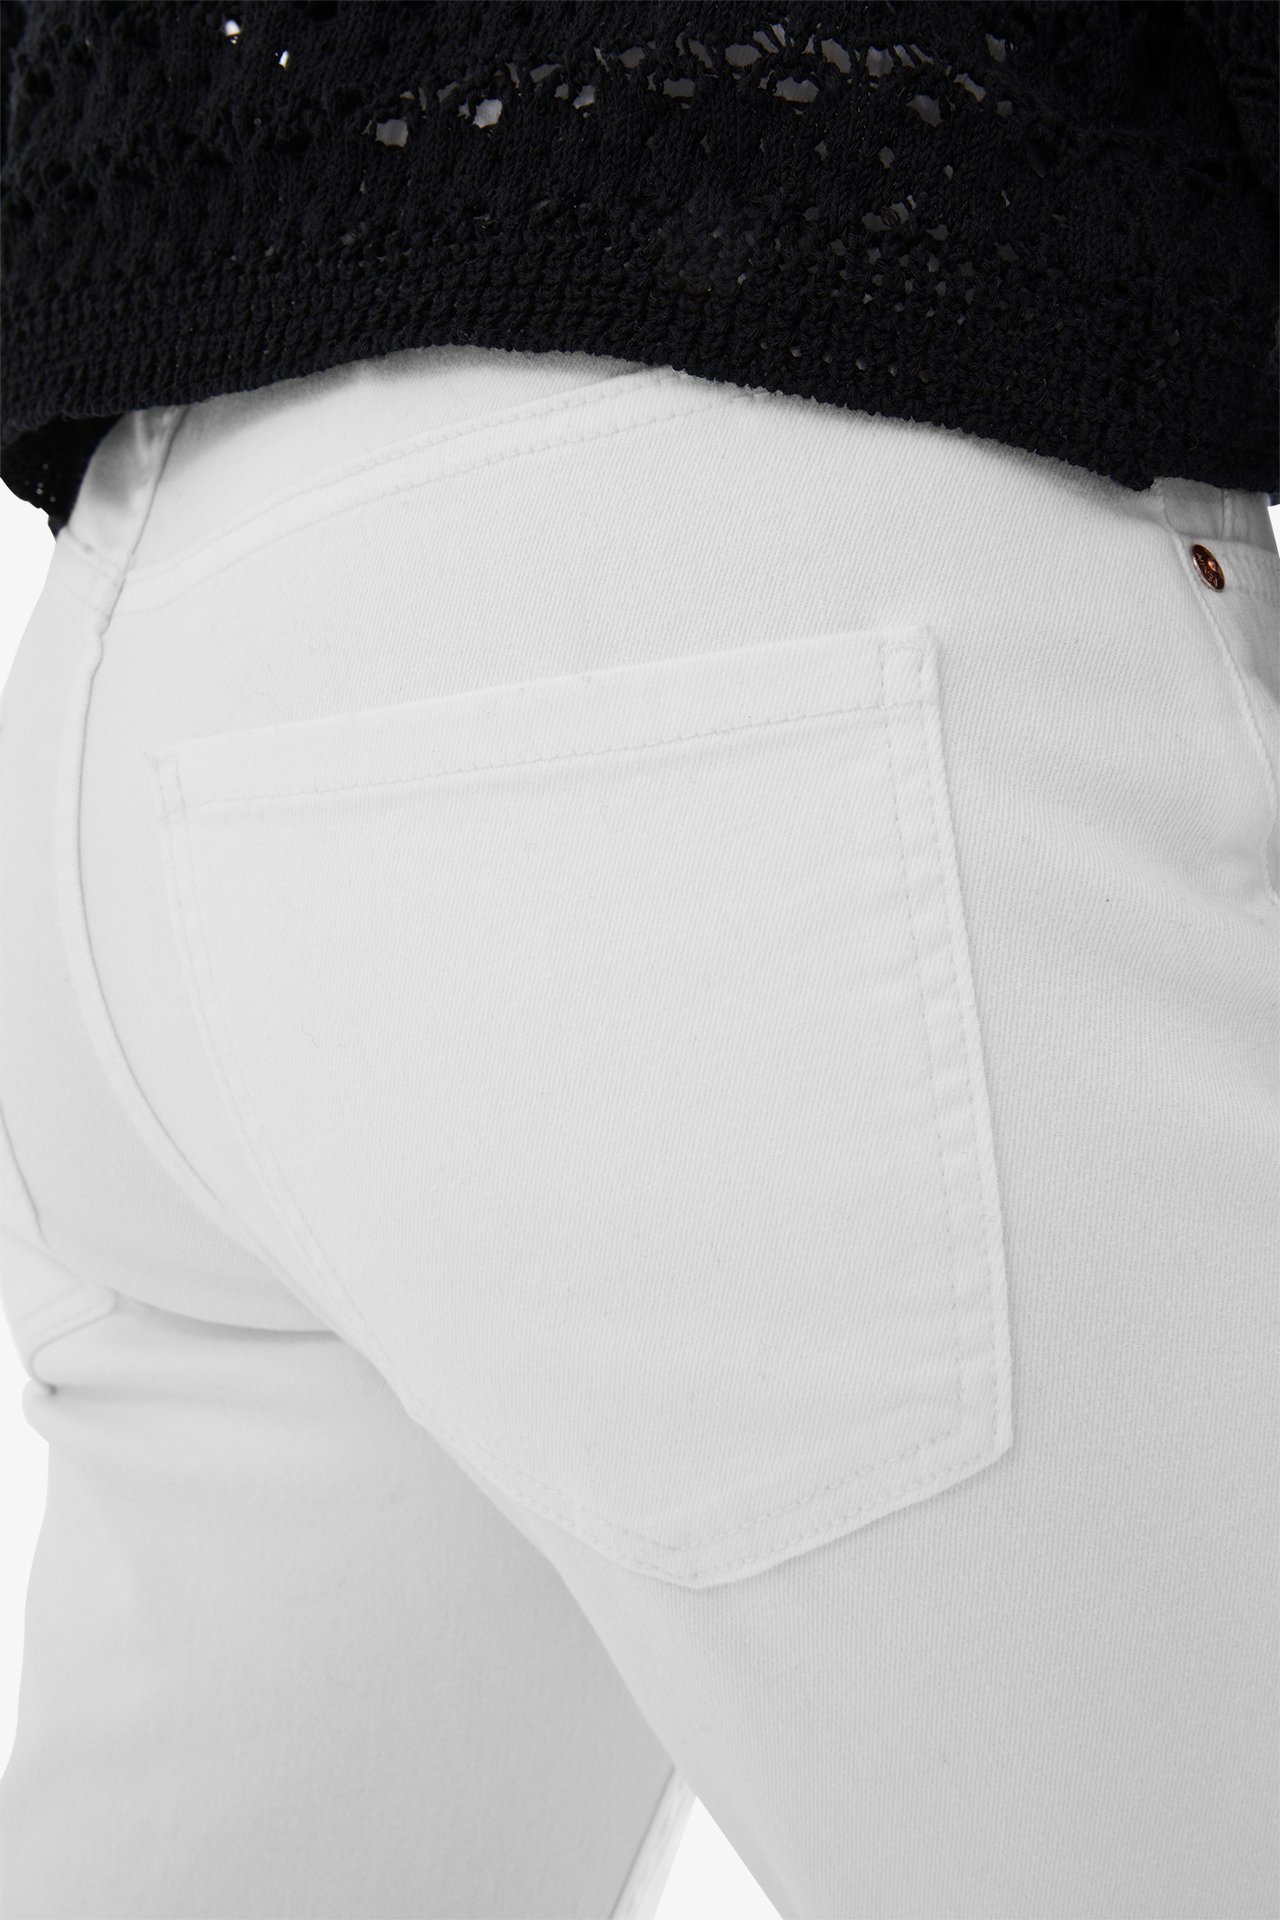 Dżinsy cropped flare regular waist - Biały - 178cm / Storlek: 38 - 3